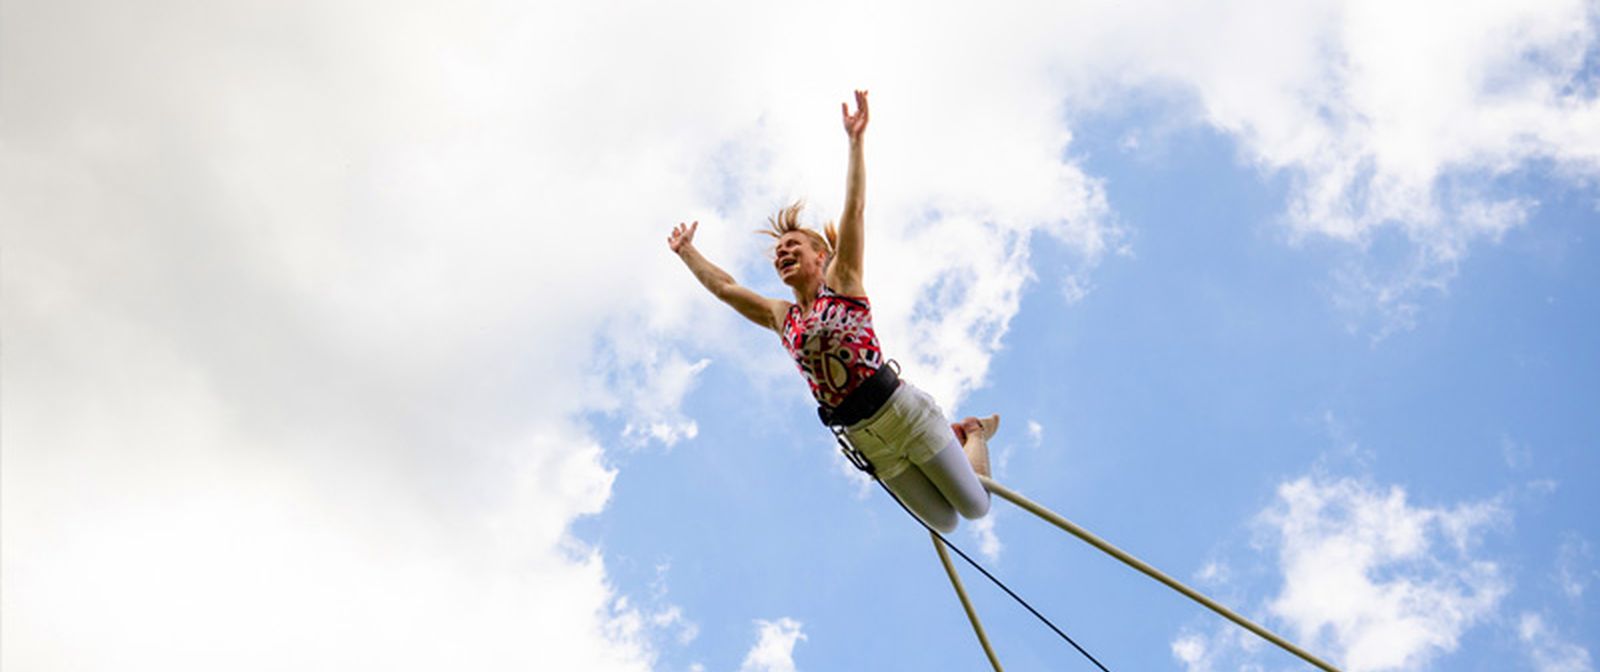 Eine Person hängt mit den Beinen an einer Trapezstange und steckt die Gliedmaßen von sich. Im Hintergrund ist ein blauer Himmel mit Wolken zu sehen. 